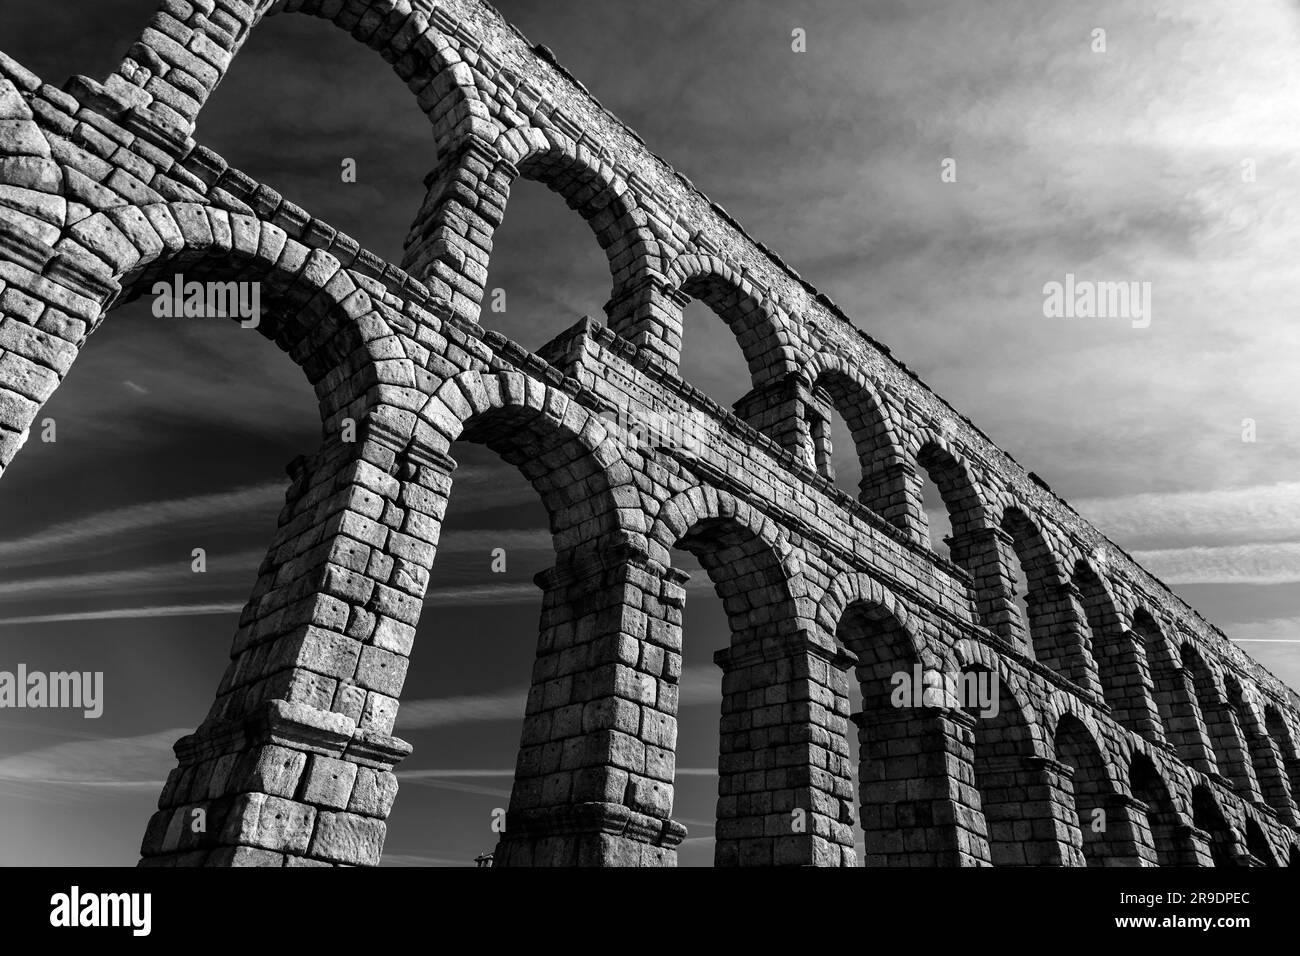 Das antike römische Aquädukt von Segovia, eines der am besten erhaltenen erhöhten römischen Aquädukte und das wichtigste Symbol von Segovia. Stockfoto